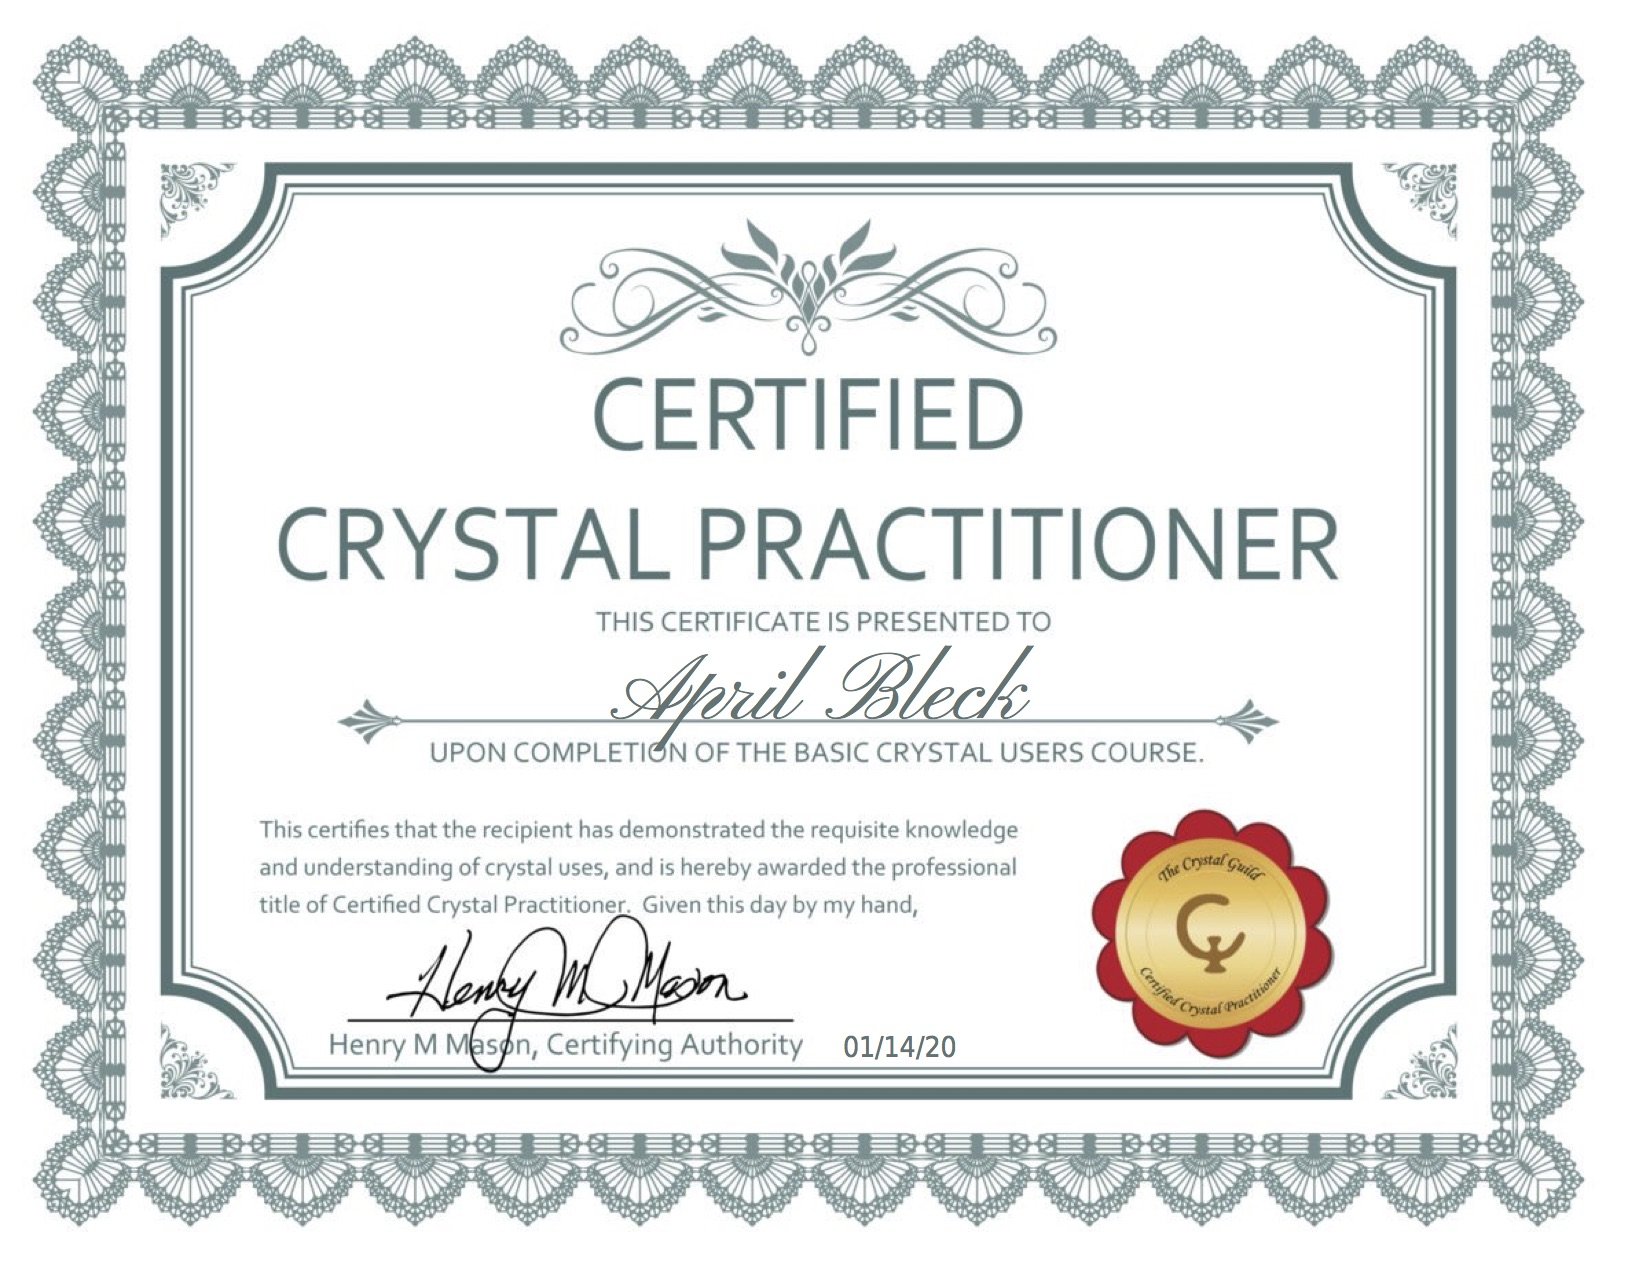 Crystal Practitioner Certificate.jpg